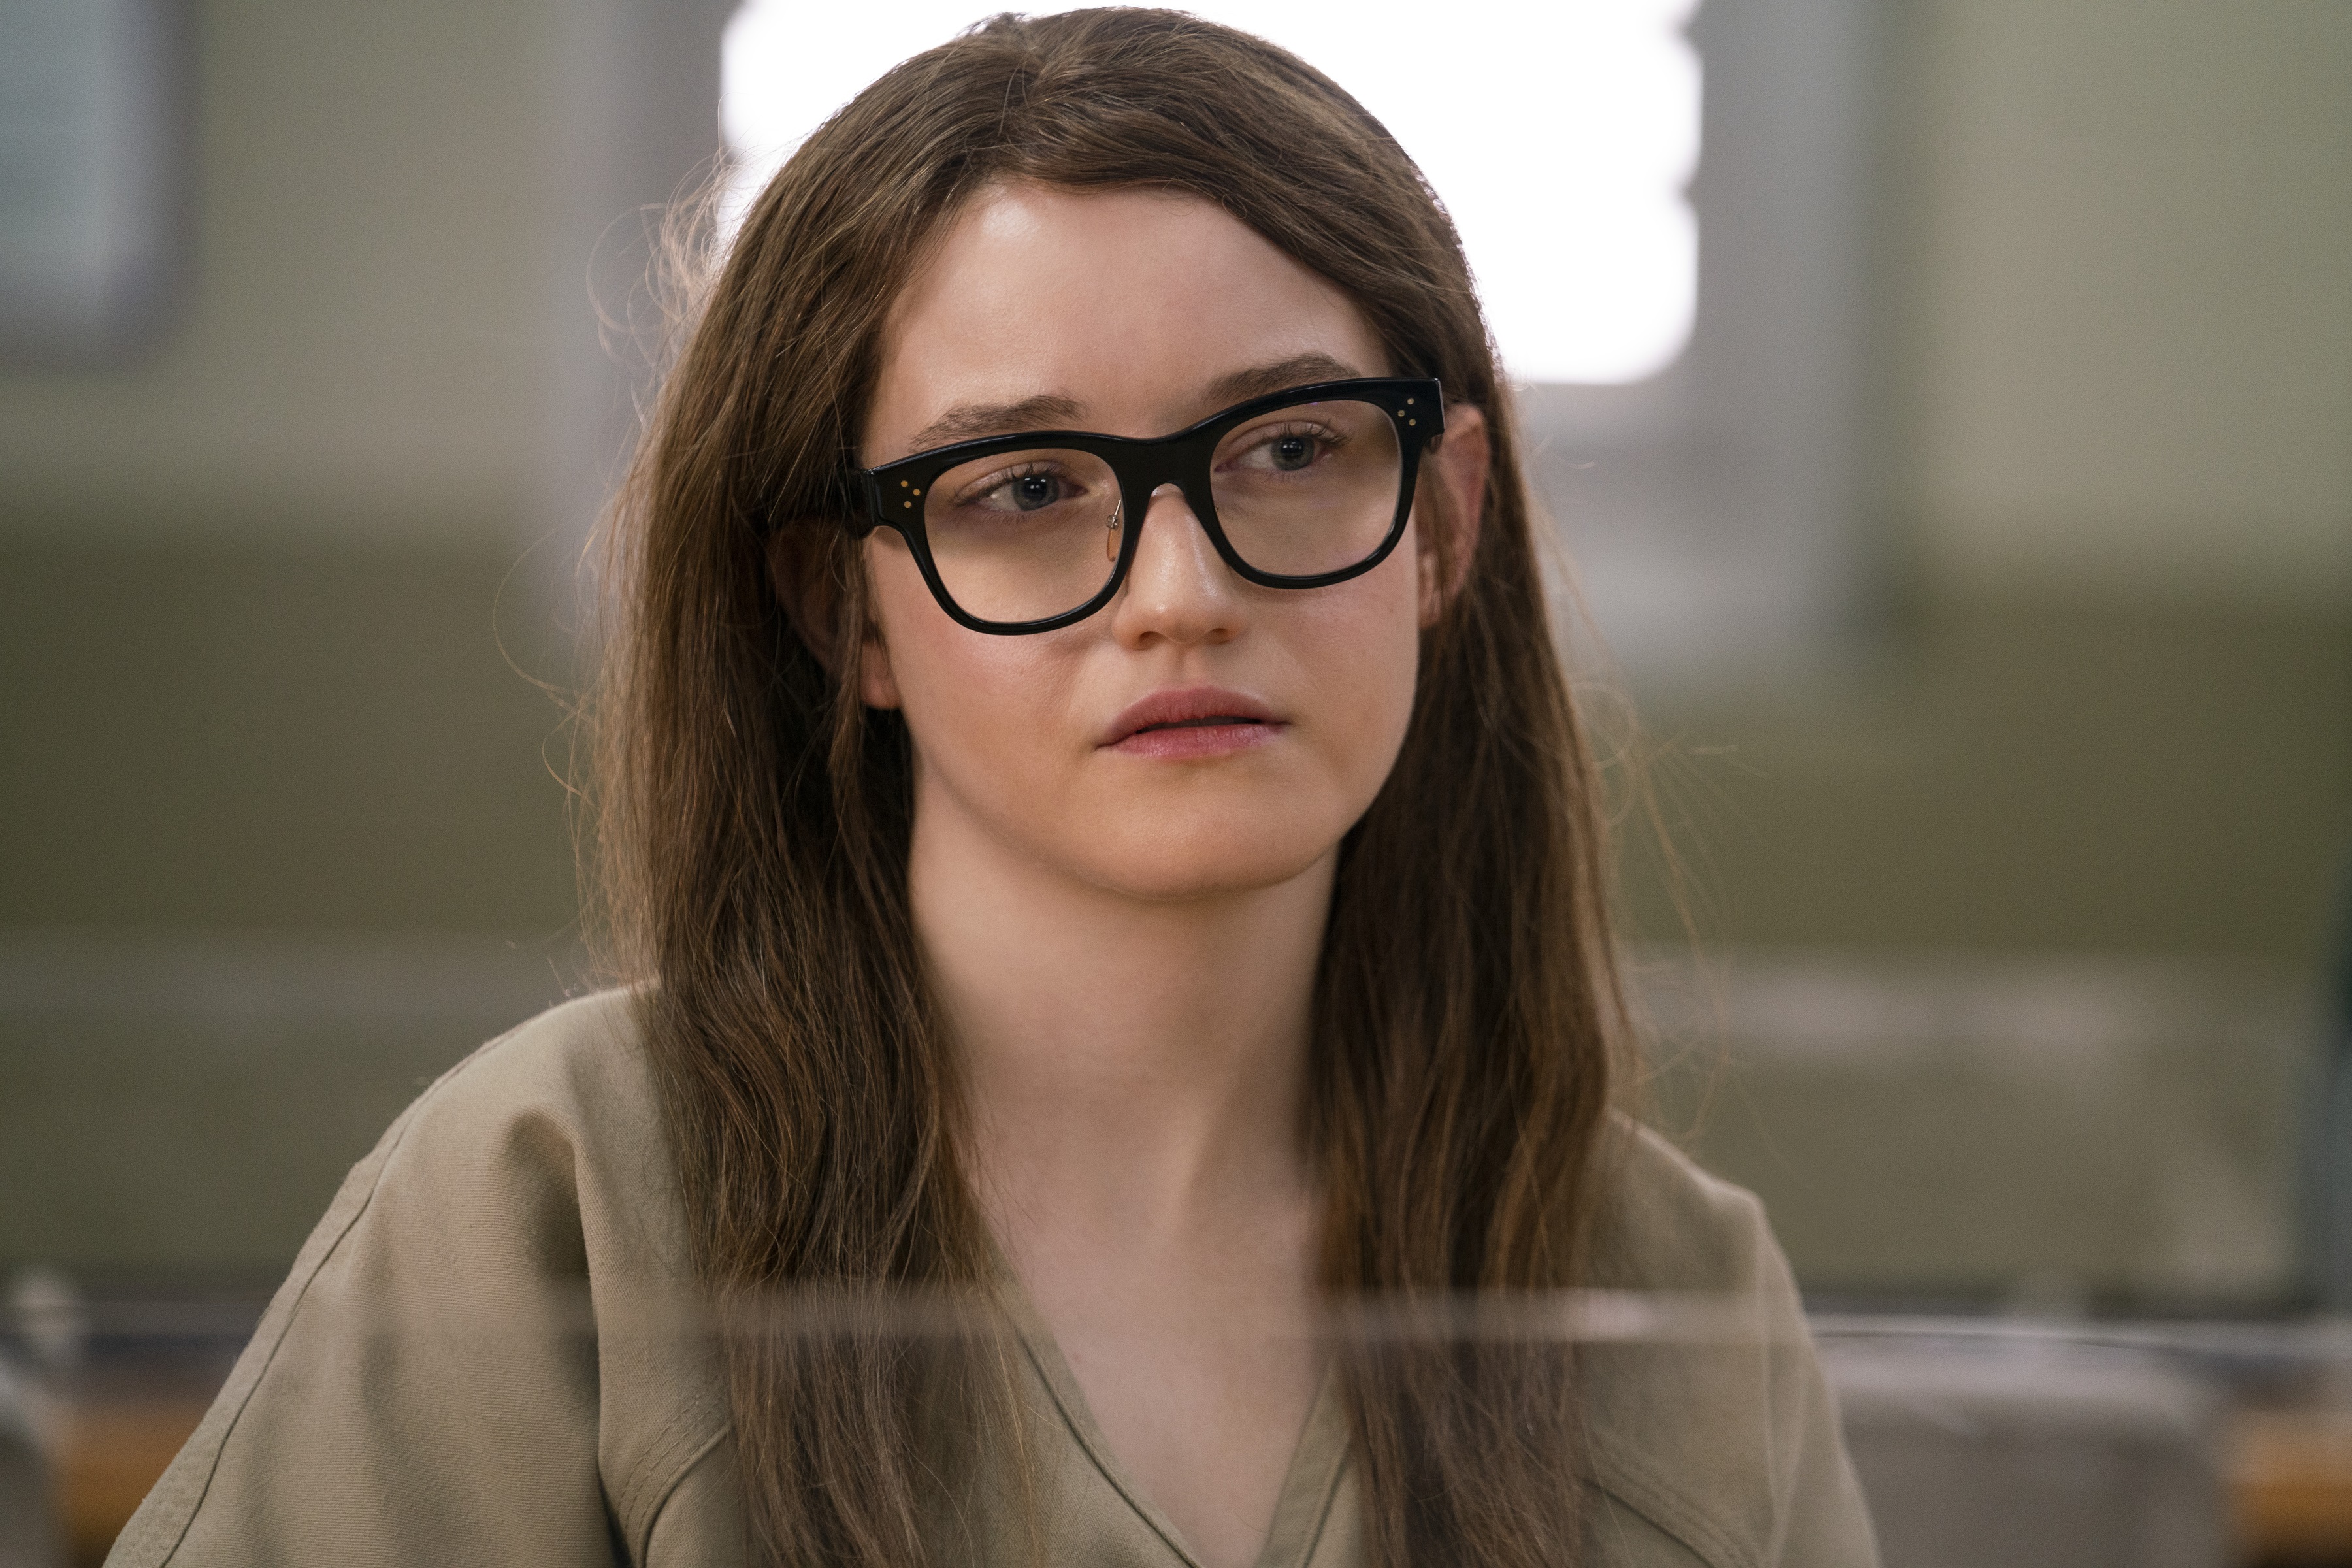 Julia Garner portraying Anna Sorokin in prison attire in Netflix's 'Inventing Anna'